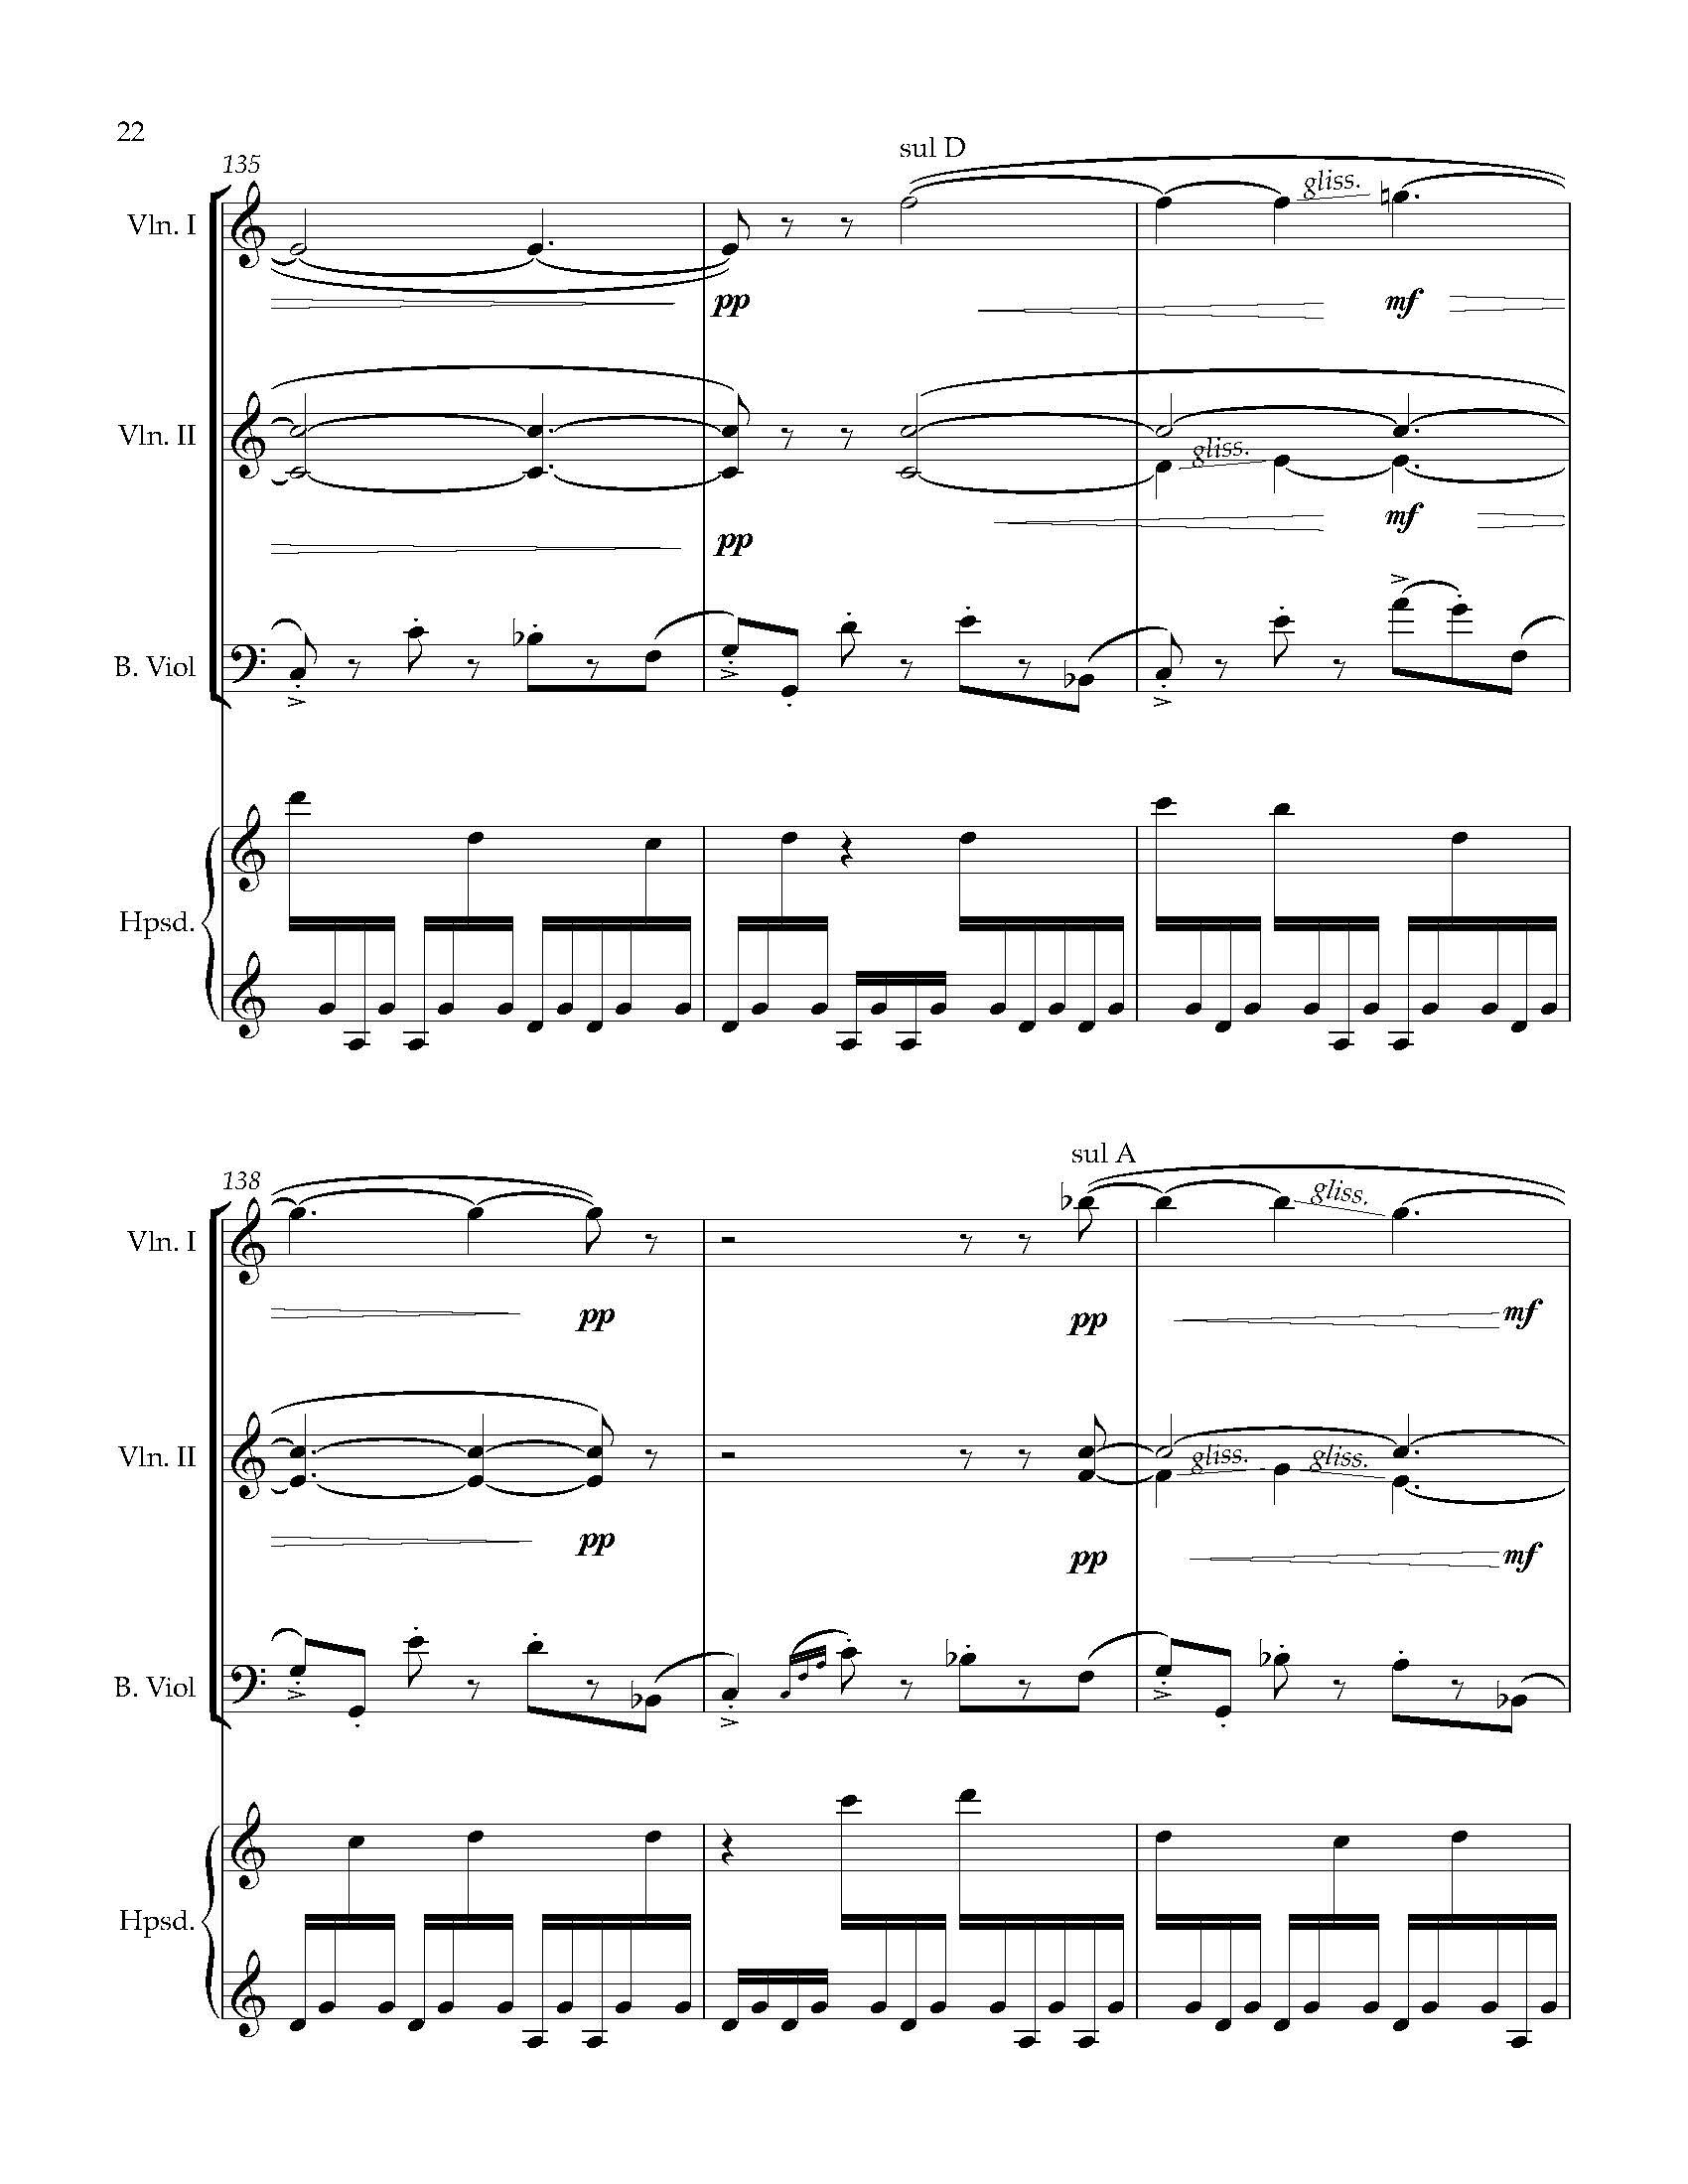 Sonata Sonare - Complete Score_Page_28.jpg